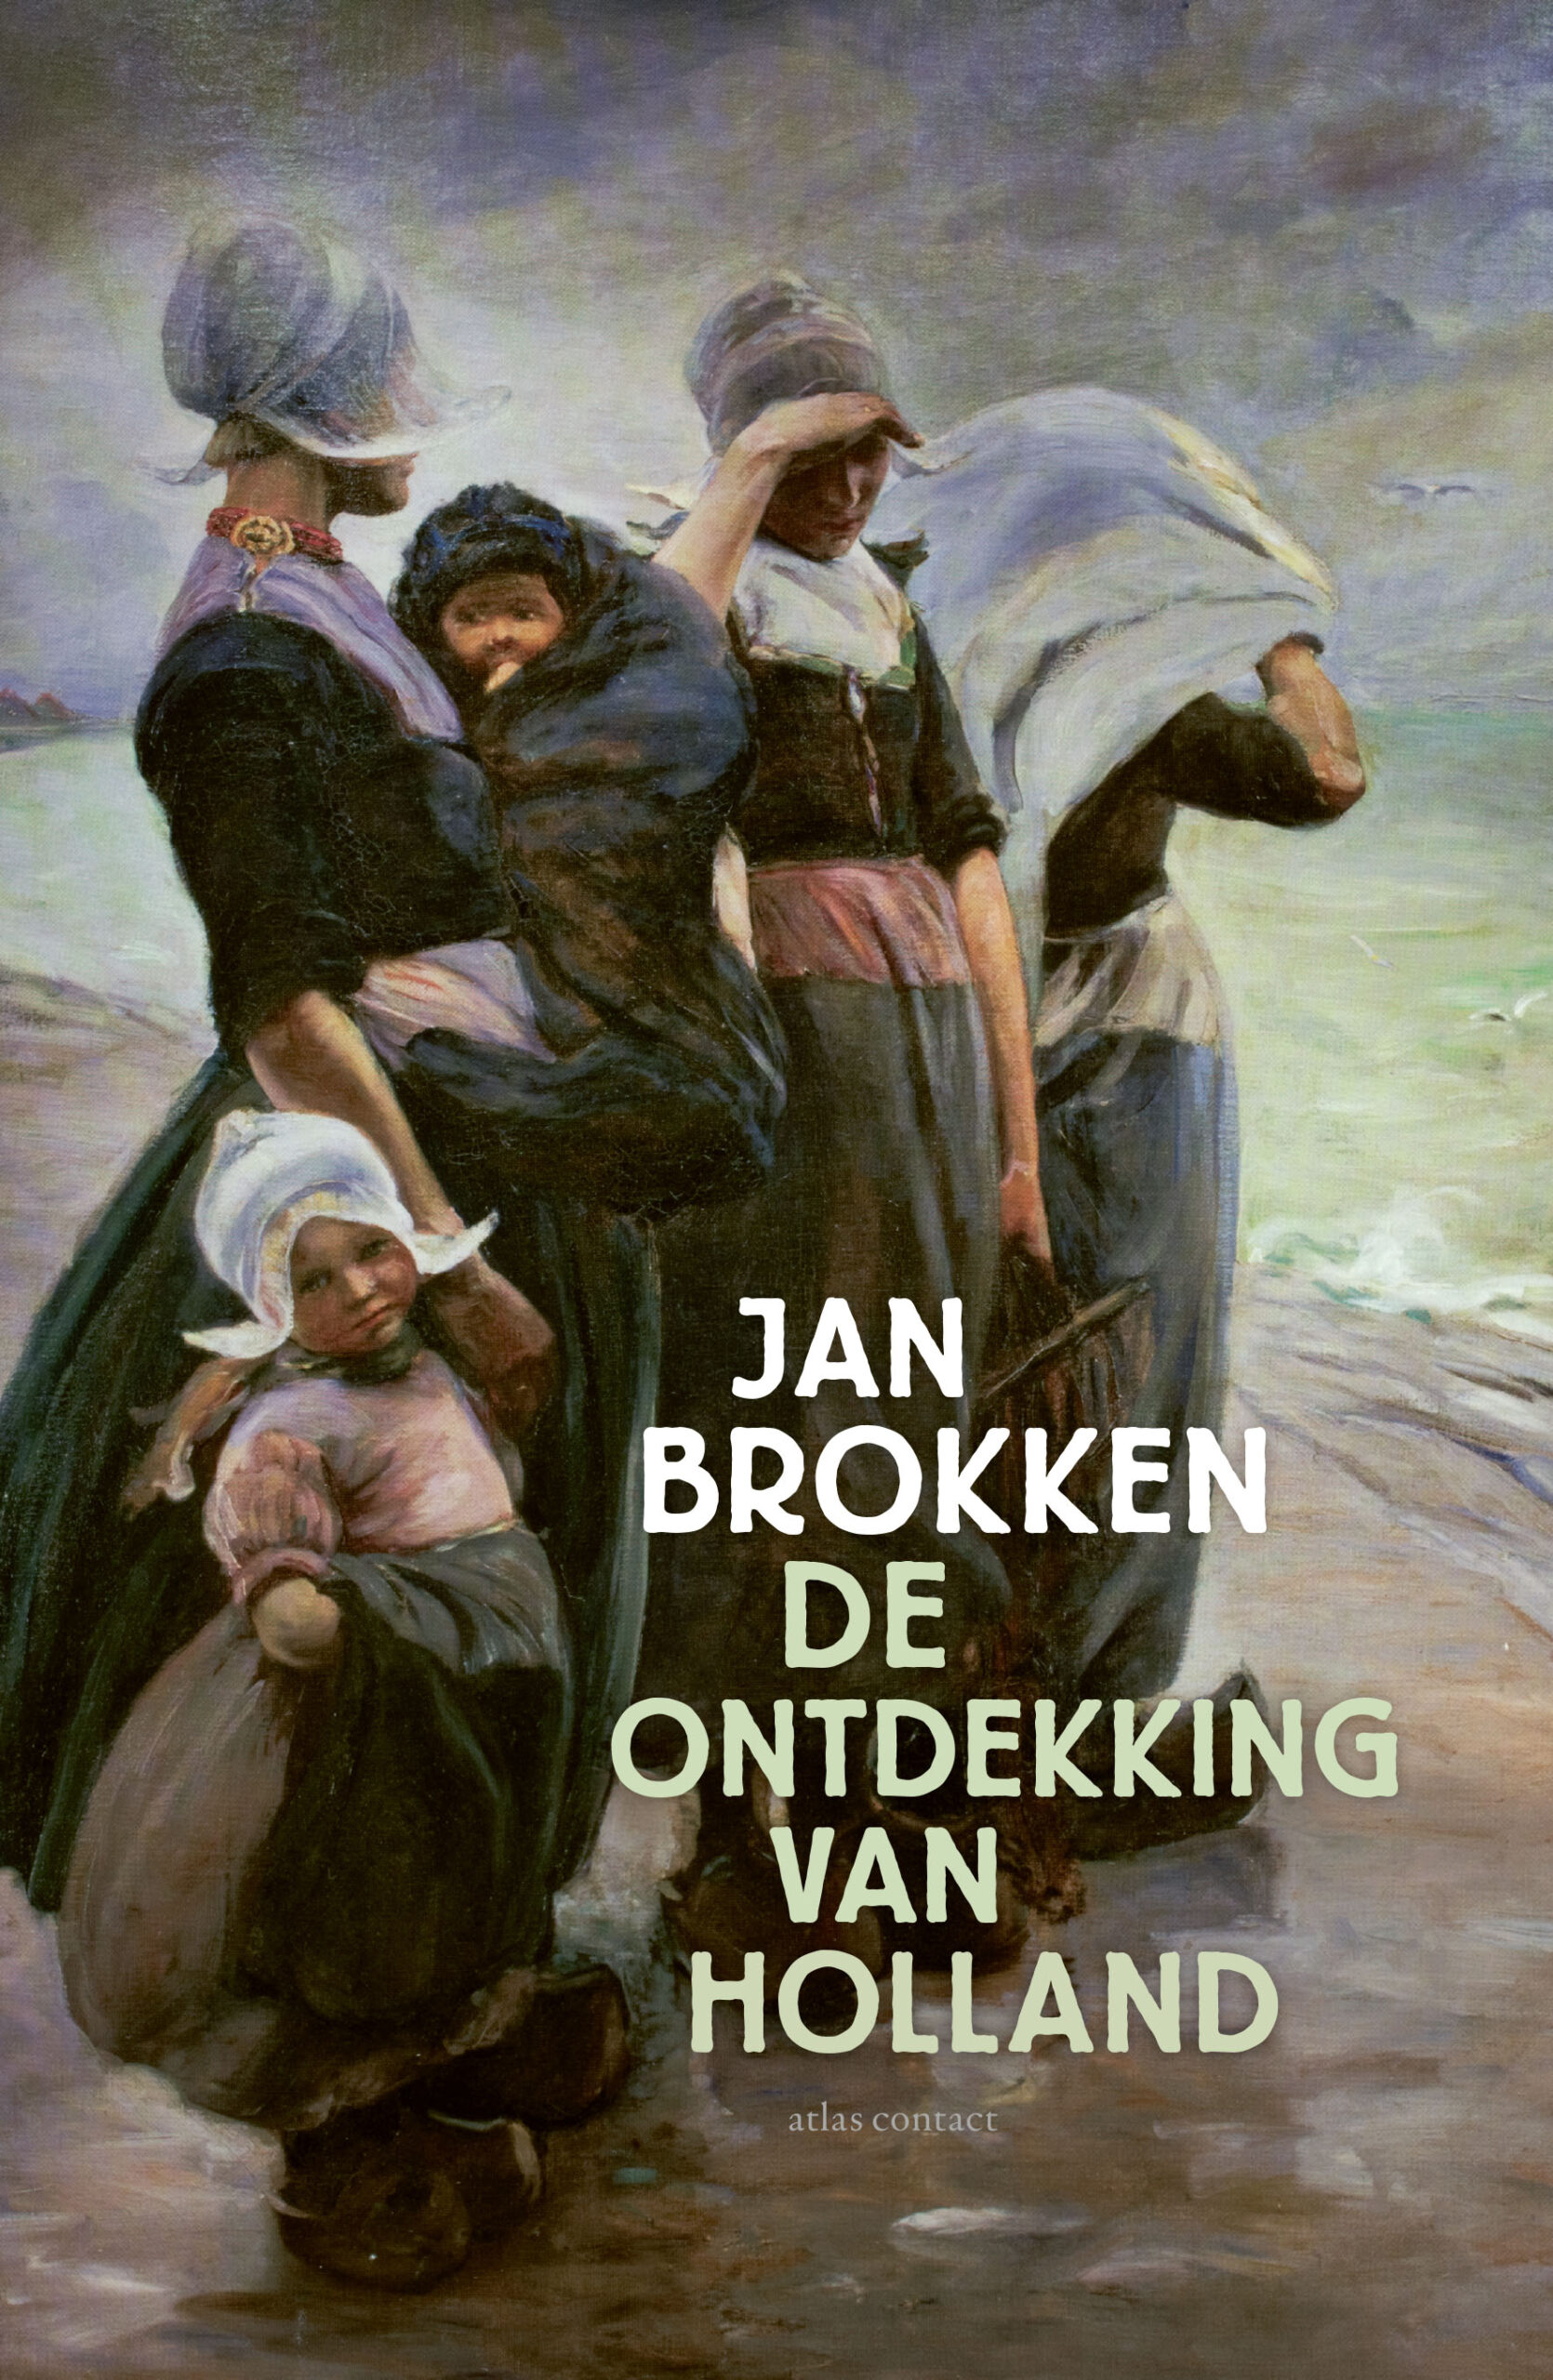 Jan Brokken in de podcast van Historisch Nieuwsblad